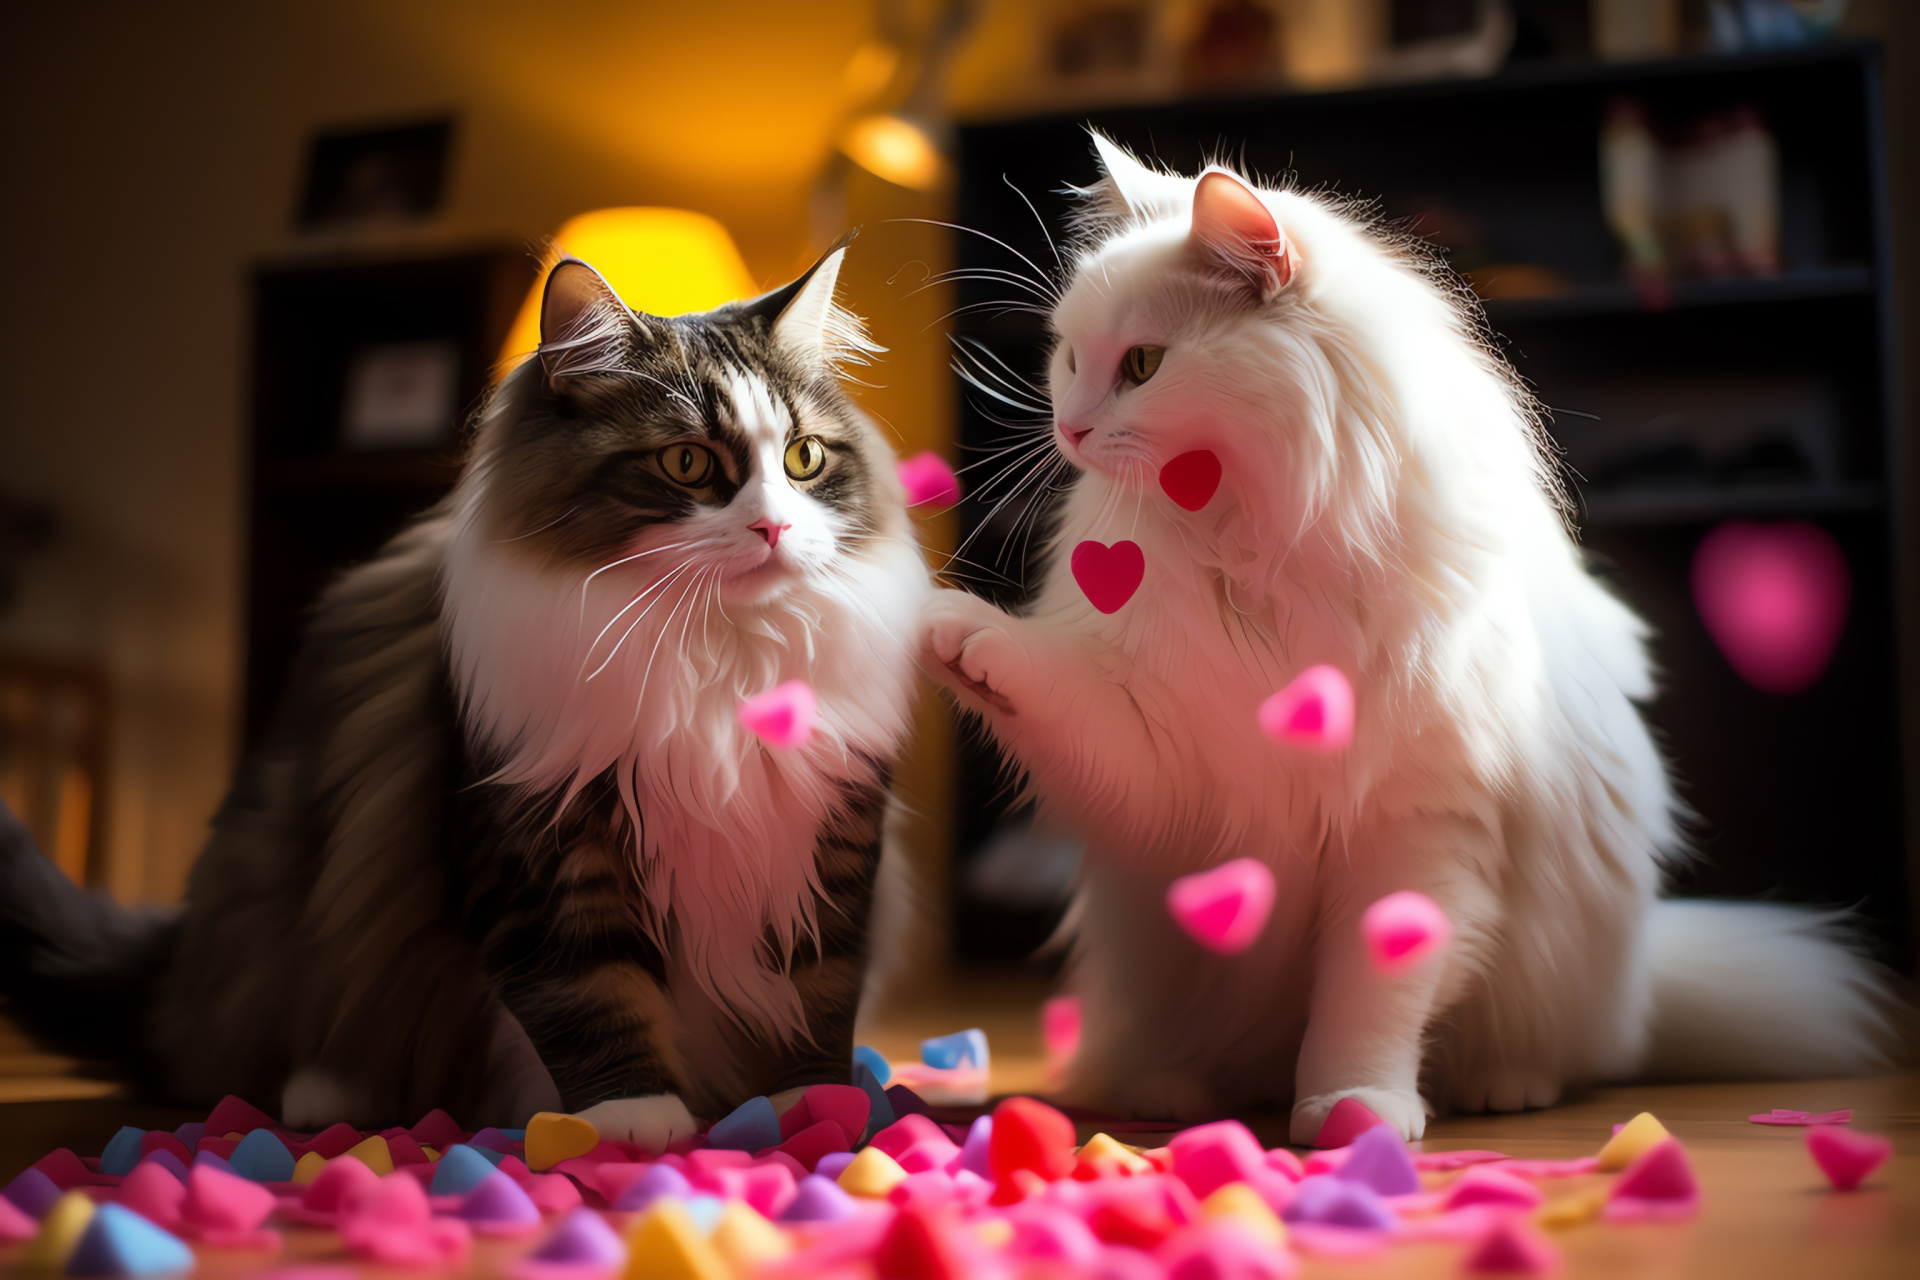 Feline Valentine celebration, Playful cat, Festive piata, Sweet treats, Party scatterings, HD Desktop Image